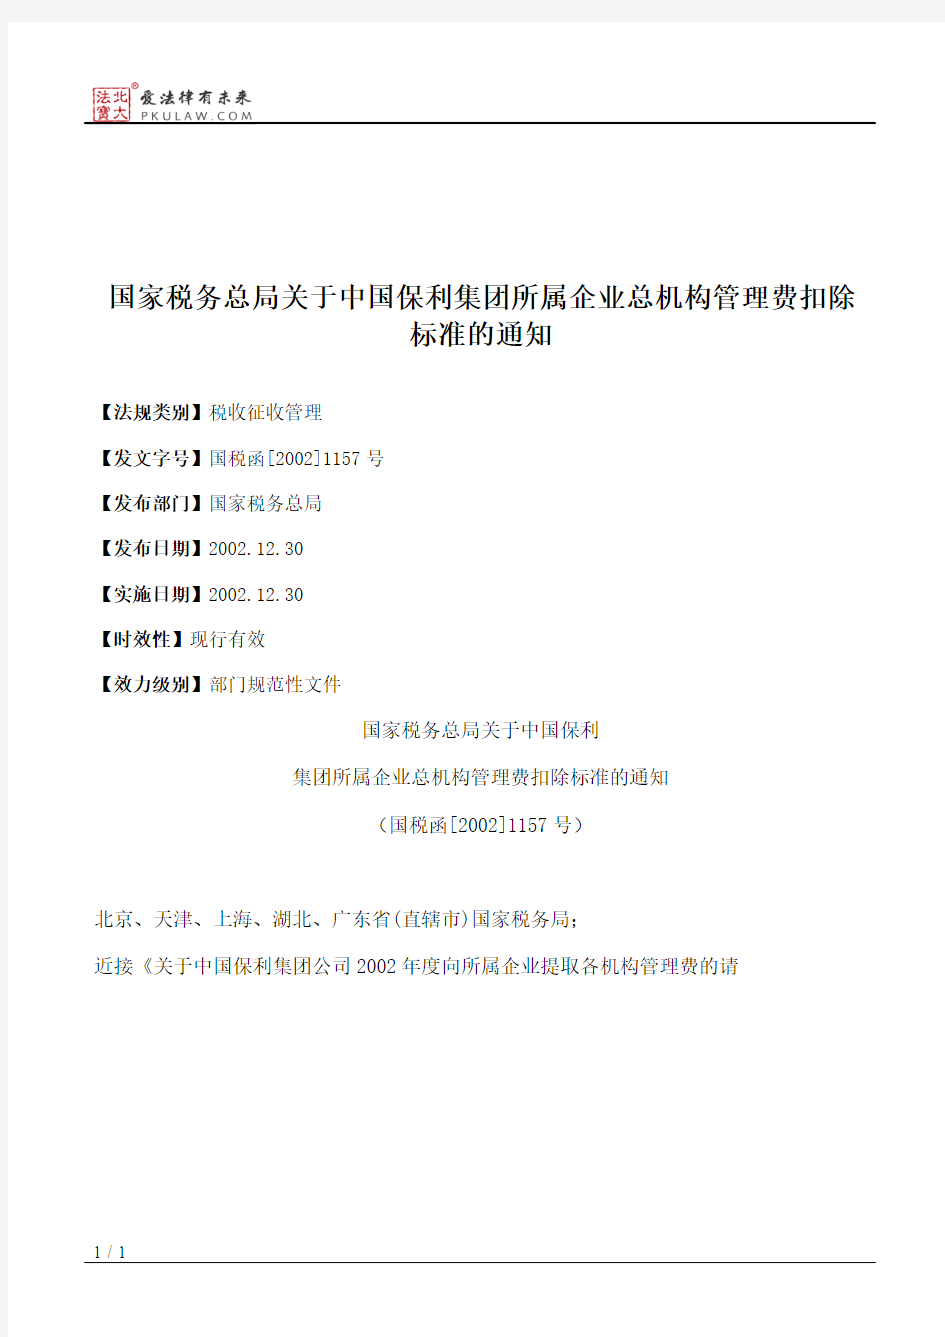 国家税务总局关于中国保利集团所属企业总机构管理费扣除标准的通知